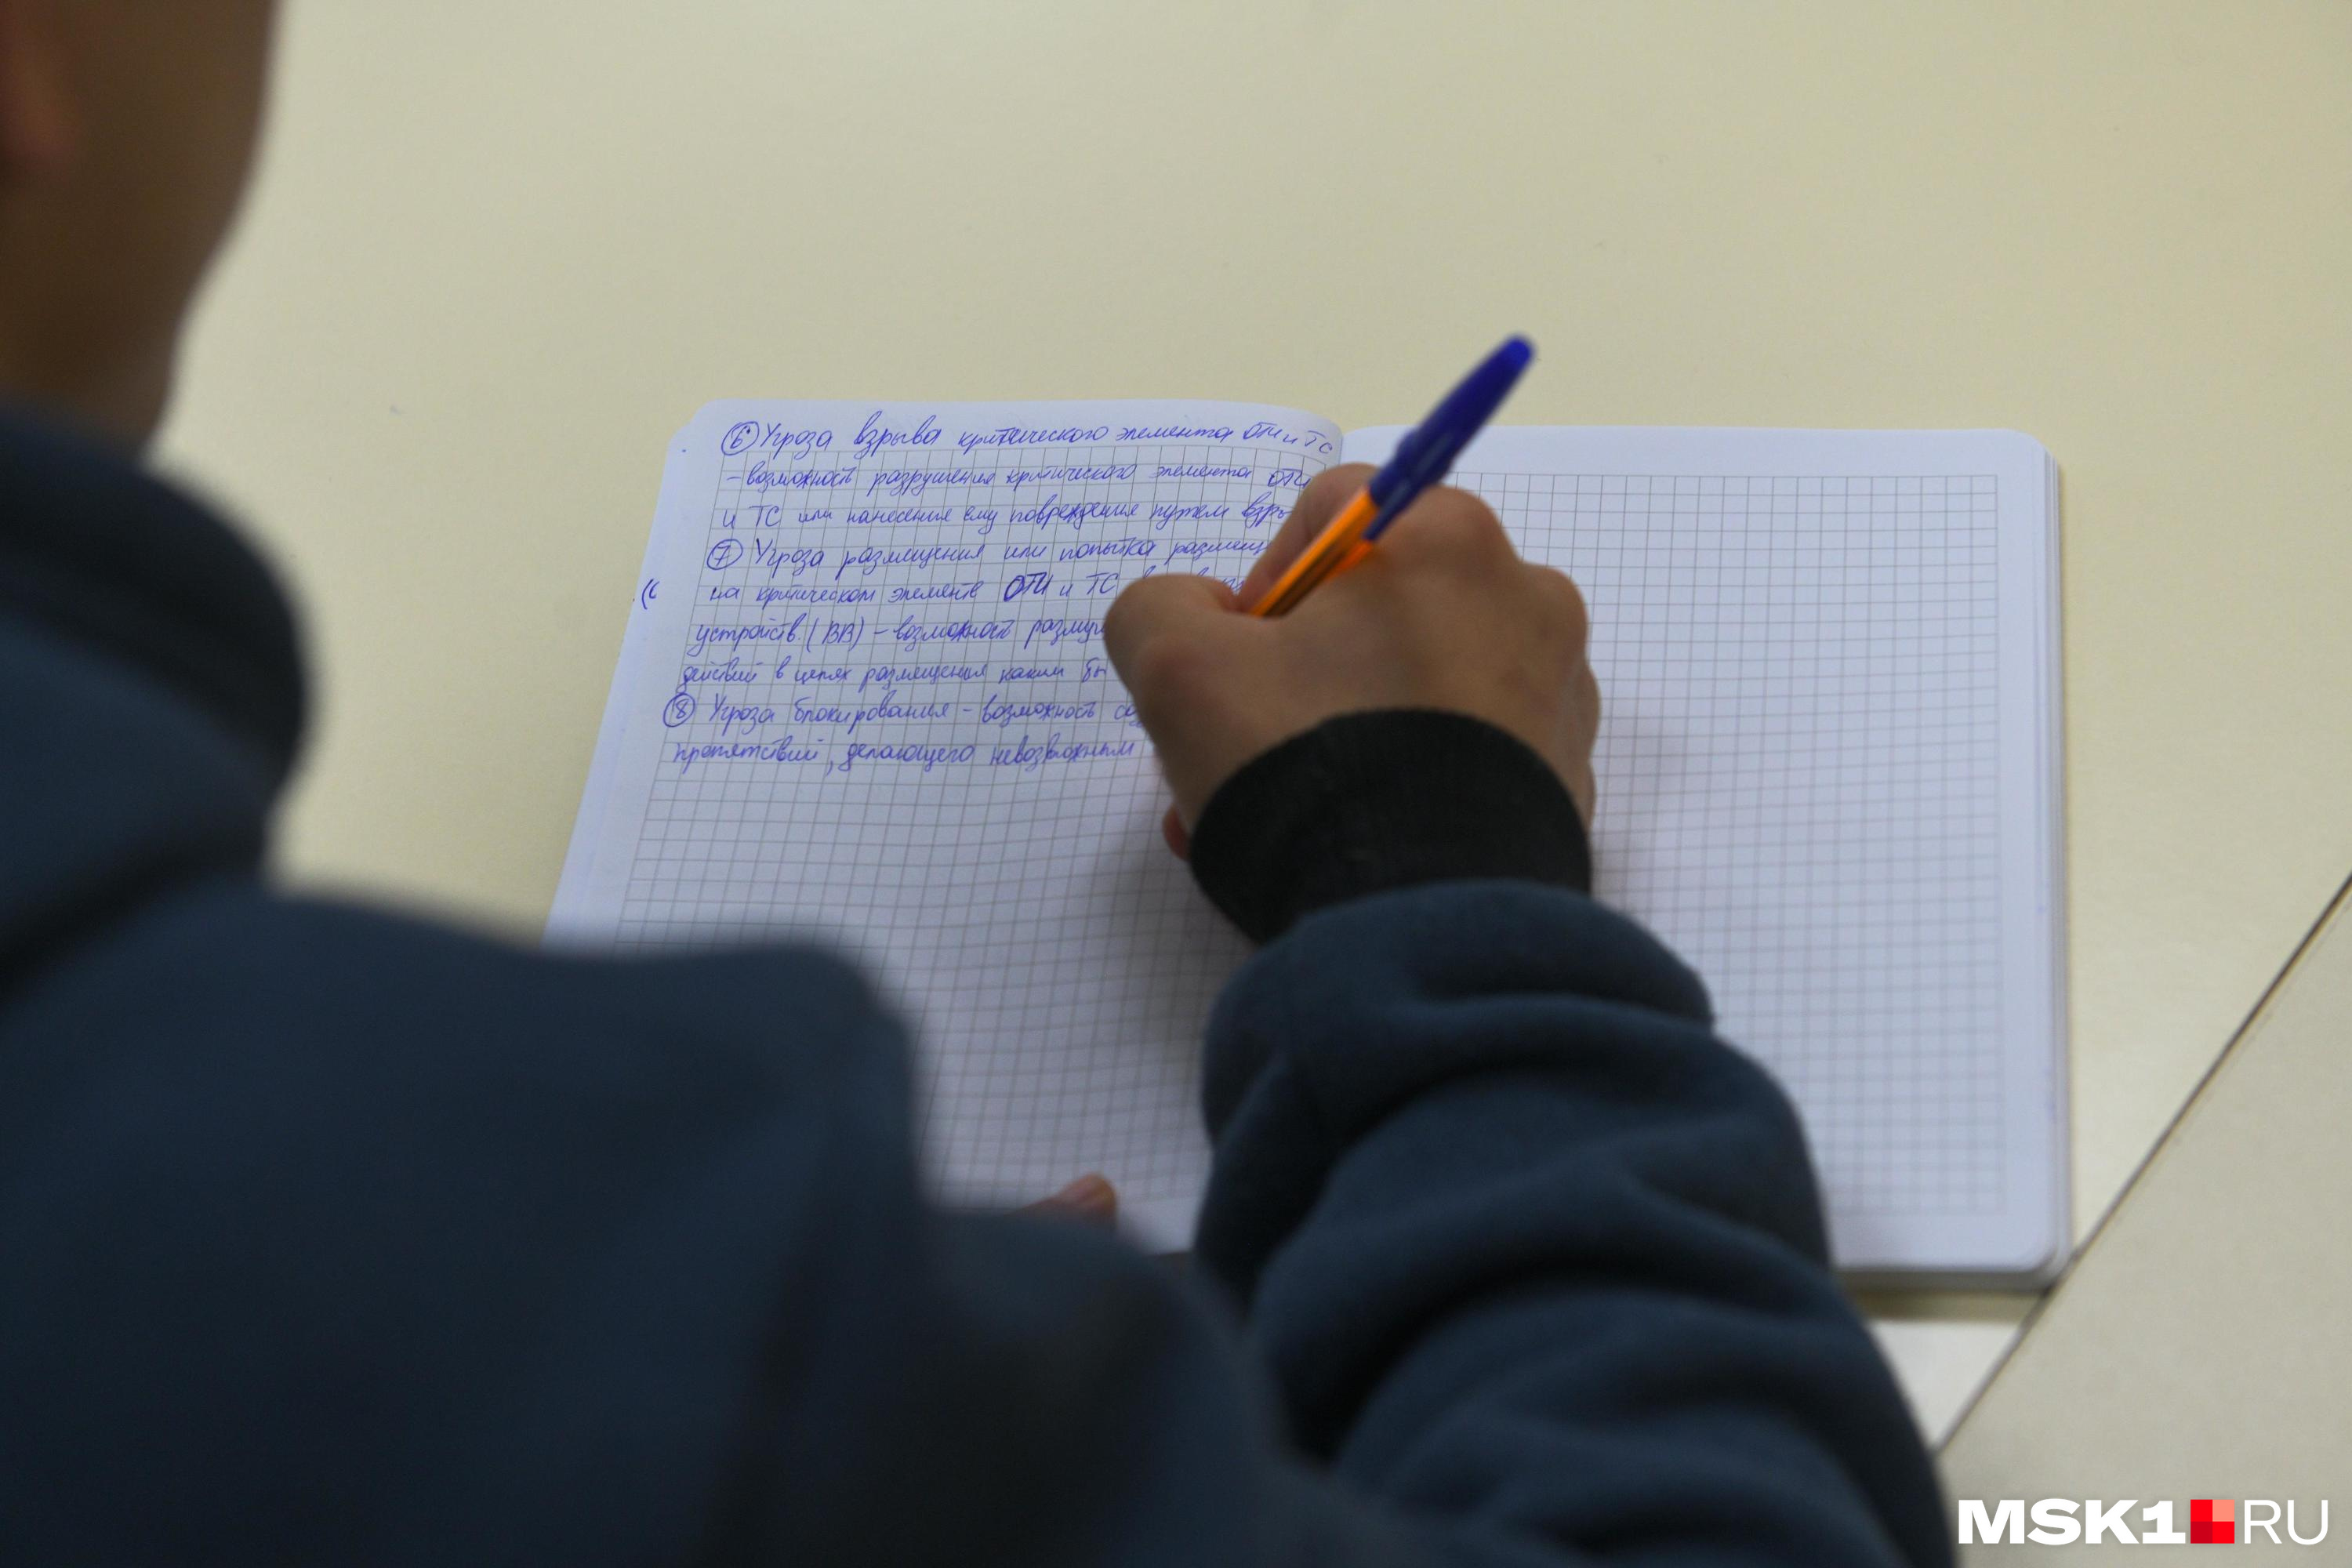 Комитет образования Читы: девочку со сломанным пальцем не заставляли писать контрольную